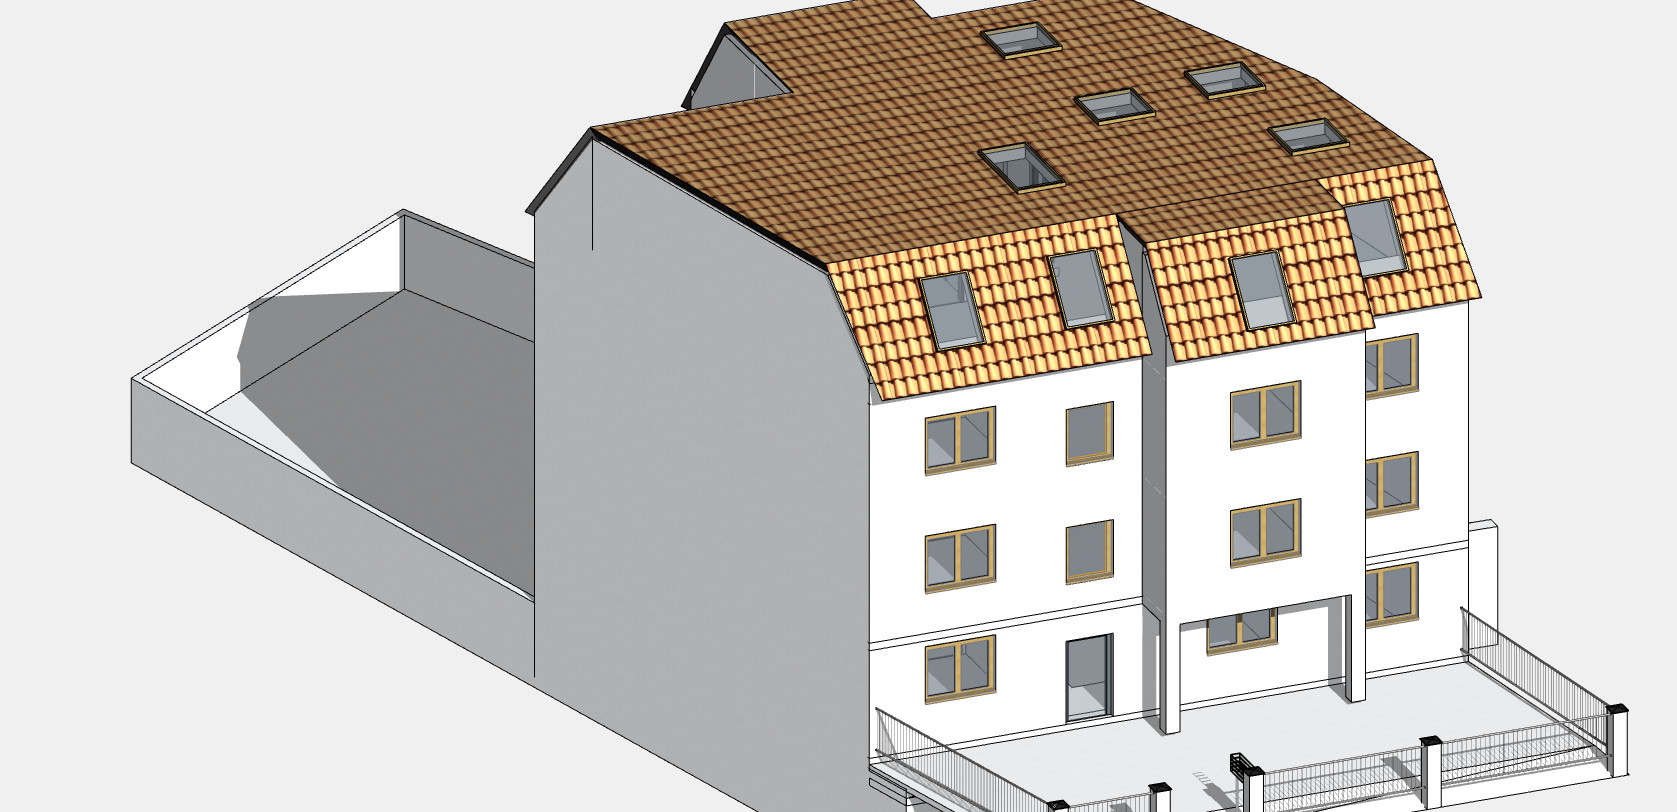 BIM Modell erstellen: Wir digitalisieren Gebäudepläne und Baupläne in 2D sowie 3D in allen gängigen CAD-Programmen.